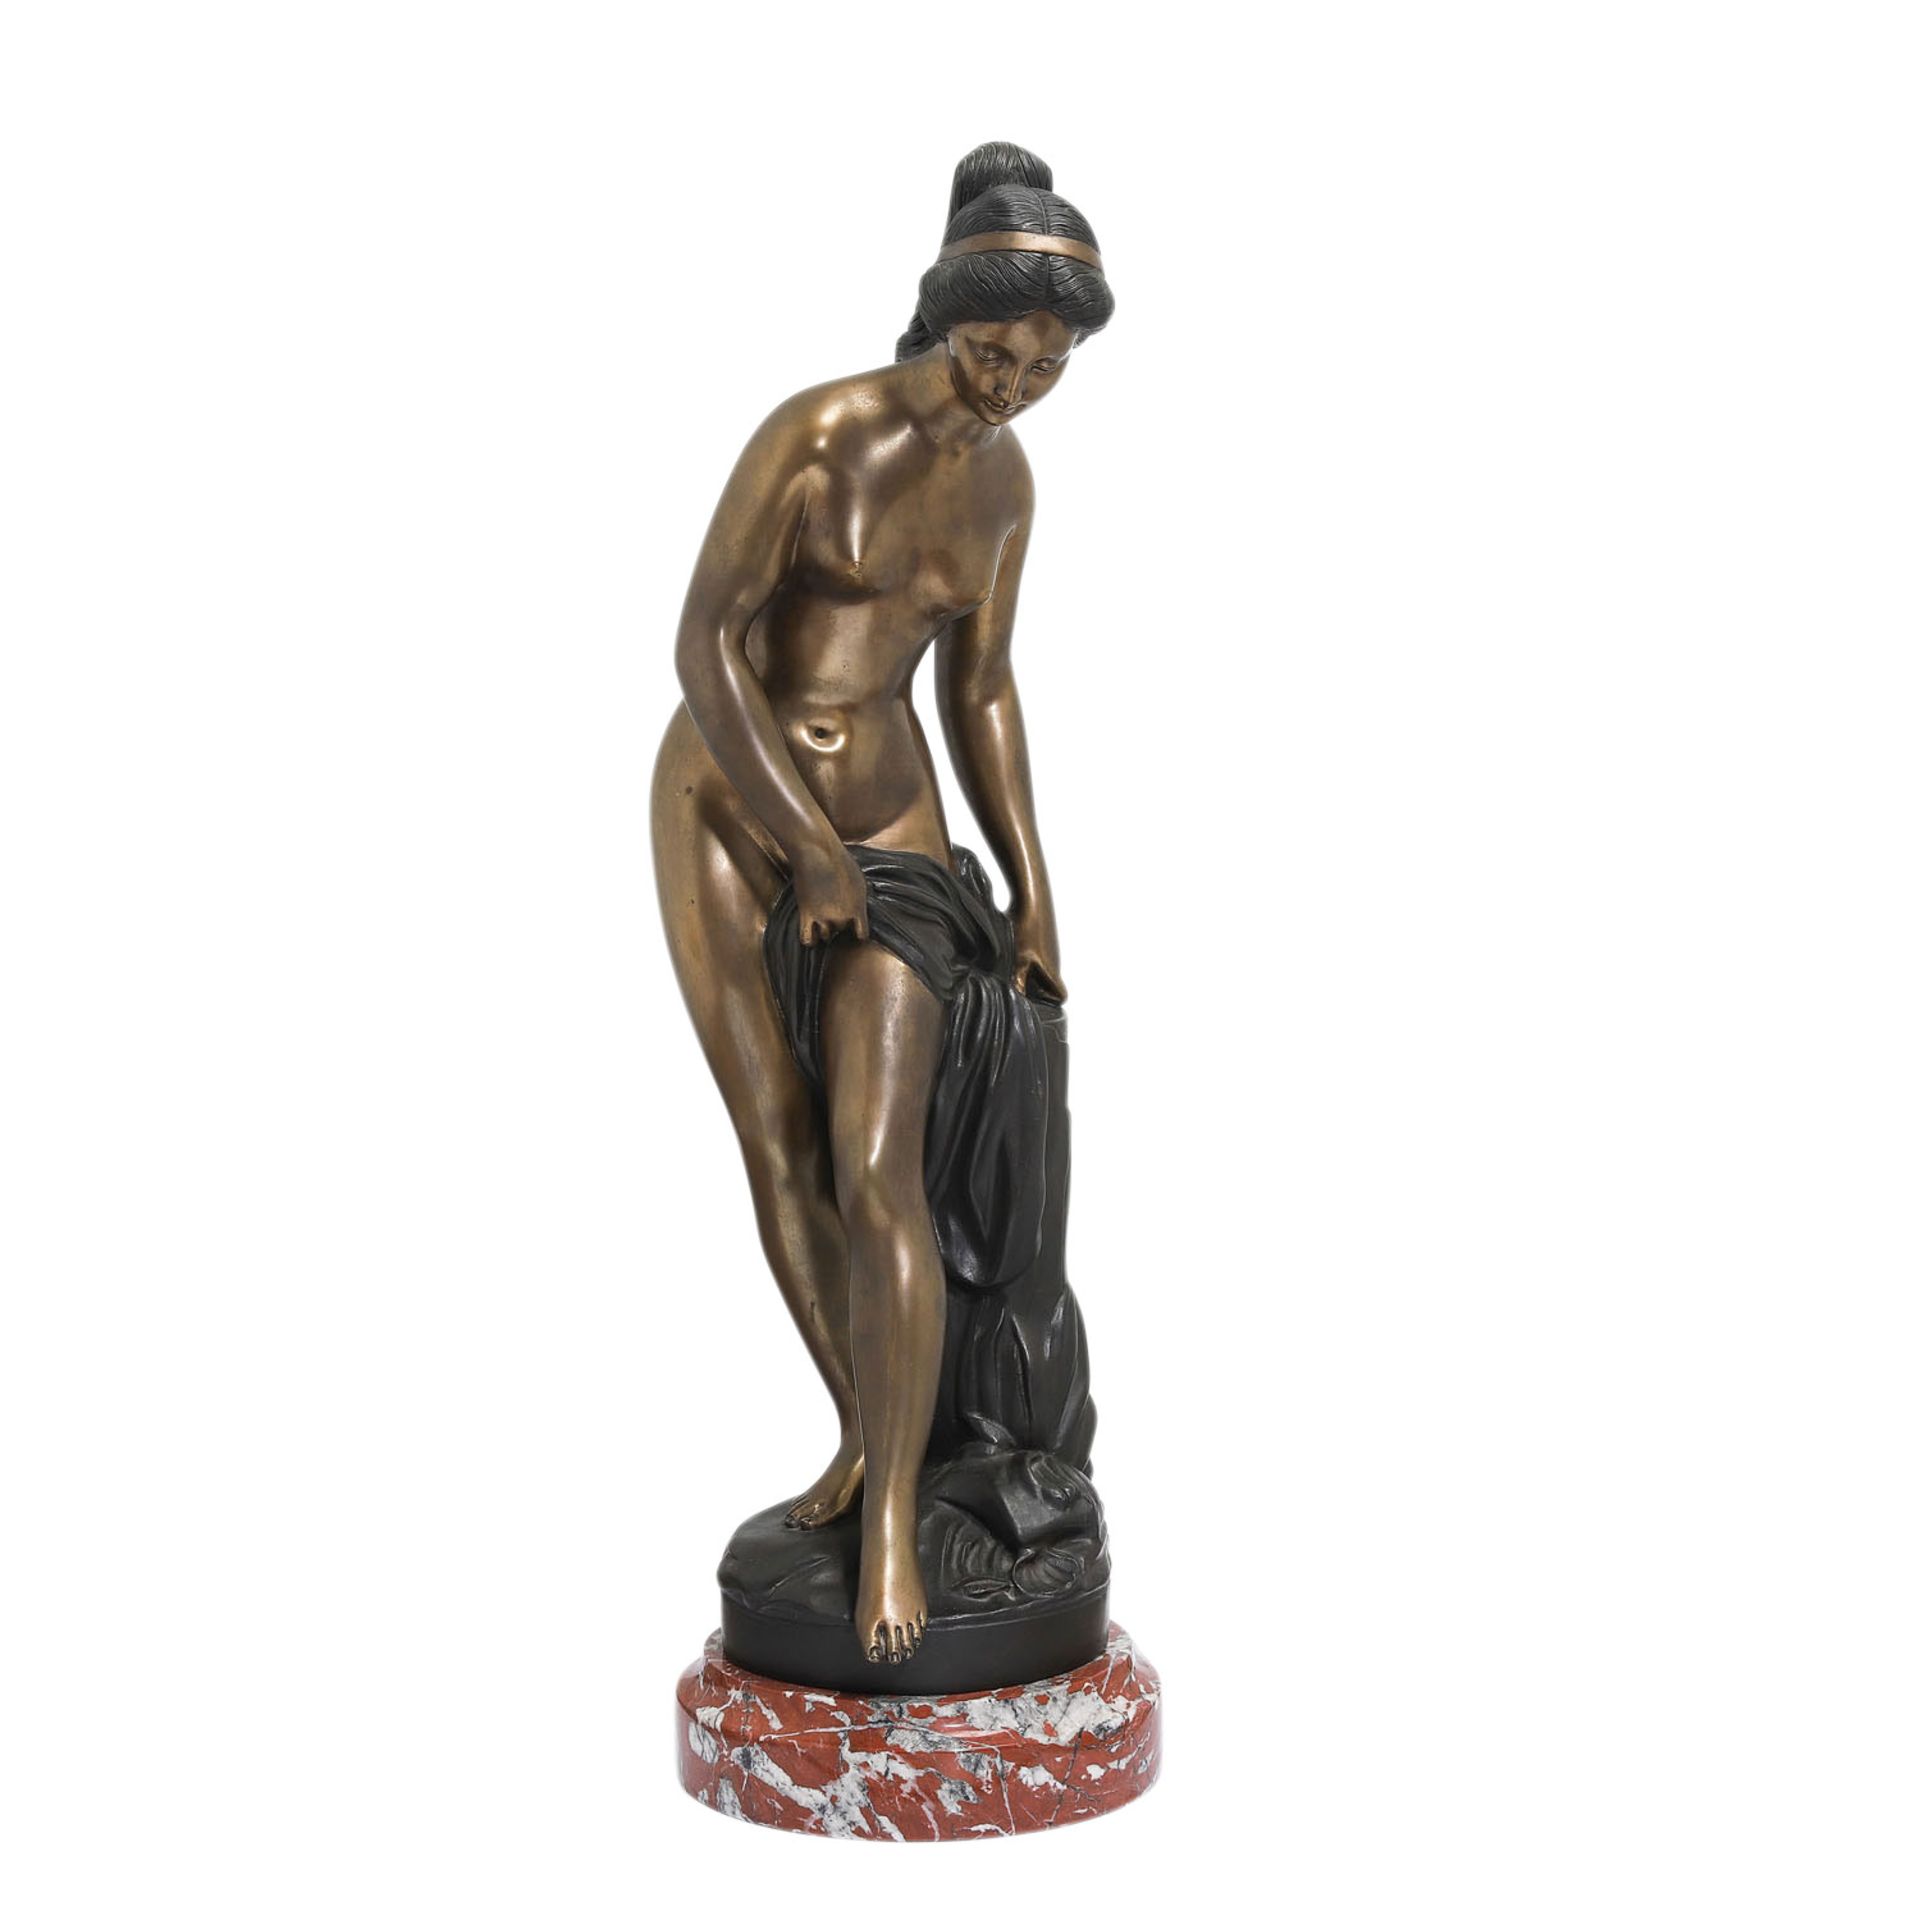 MOREAU 'Badende', 20. Jh..Bronze, stehende weibliche Aktfigur mit Tuch, bez. 'Moreau', auf rundem